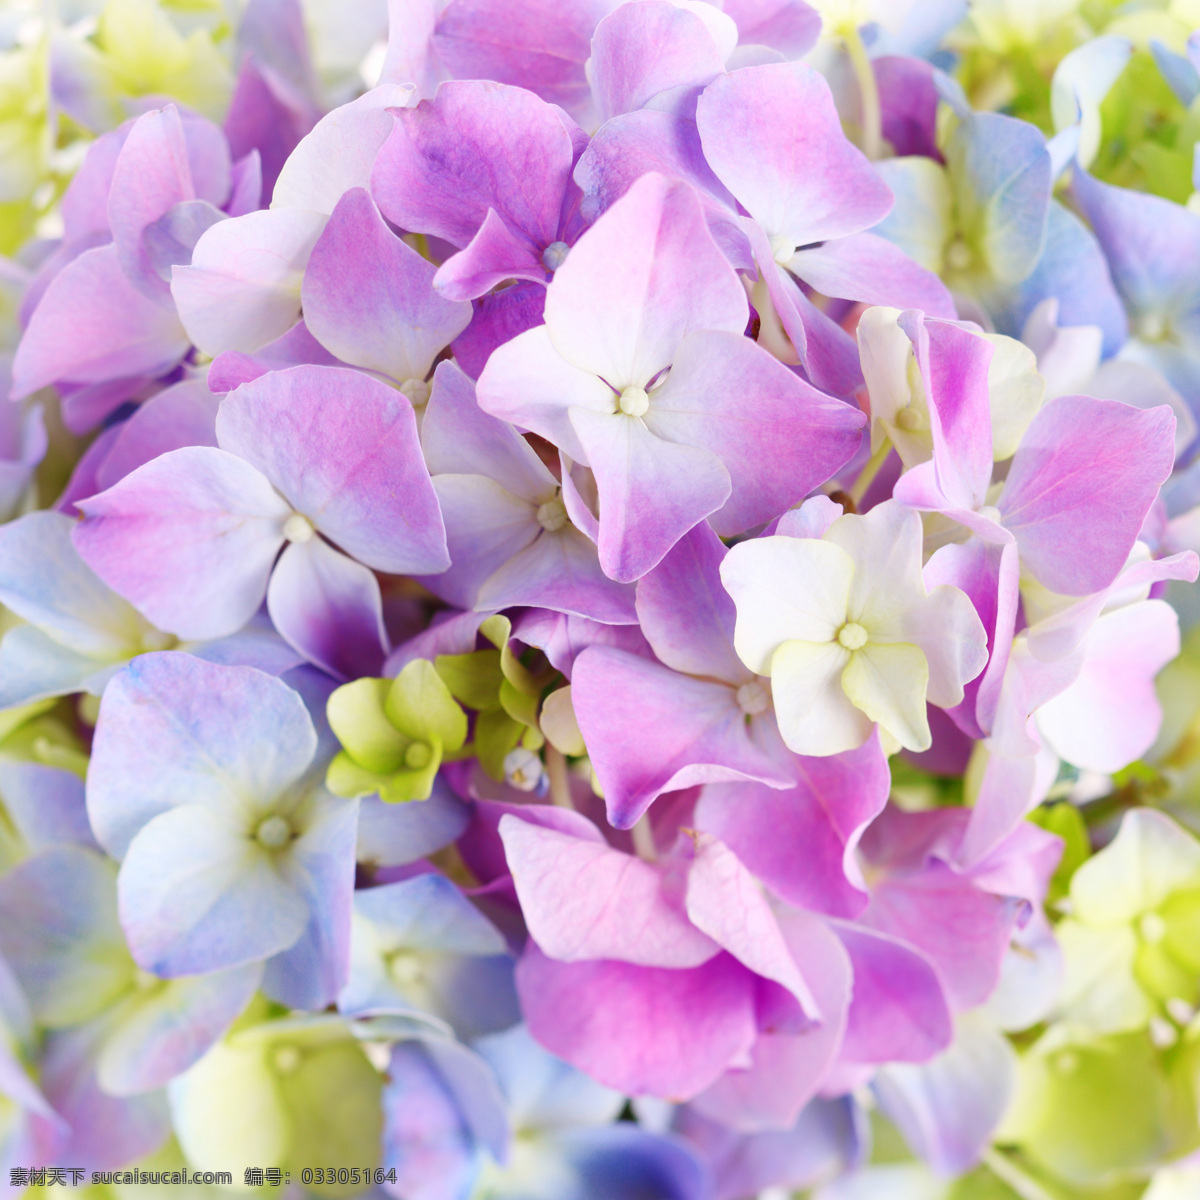 美丽 唯美 花朵 植物 鲜花 近照 浪漫 美丽的花朵 朦胧 梦幻 意境 淡紫色 干净 花草树木 生物世界